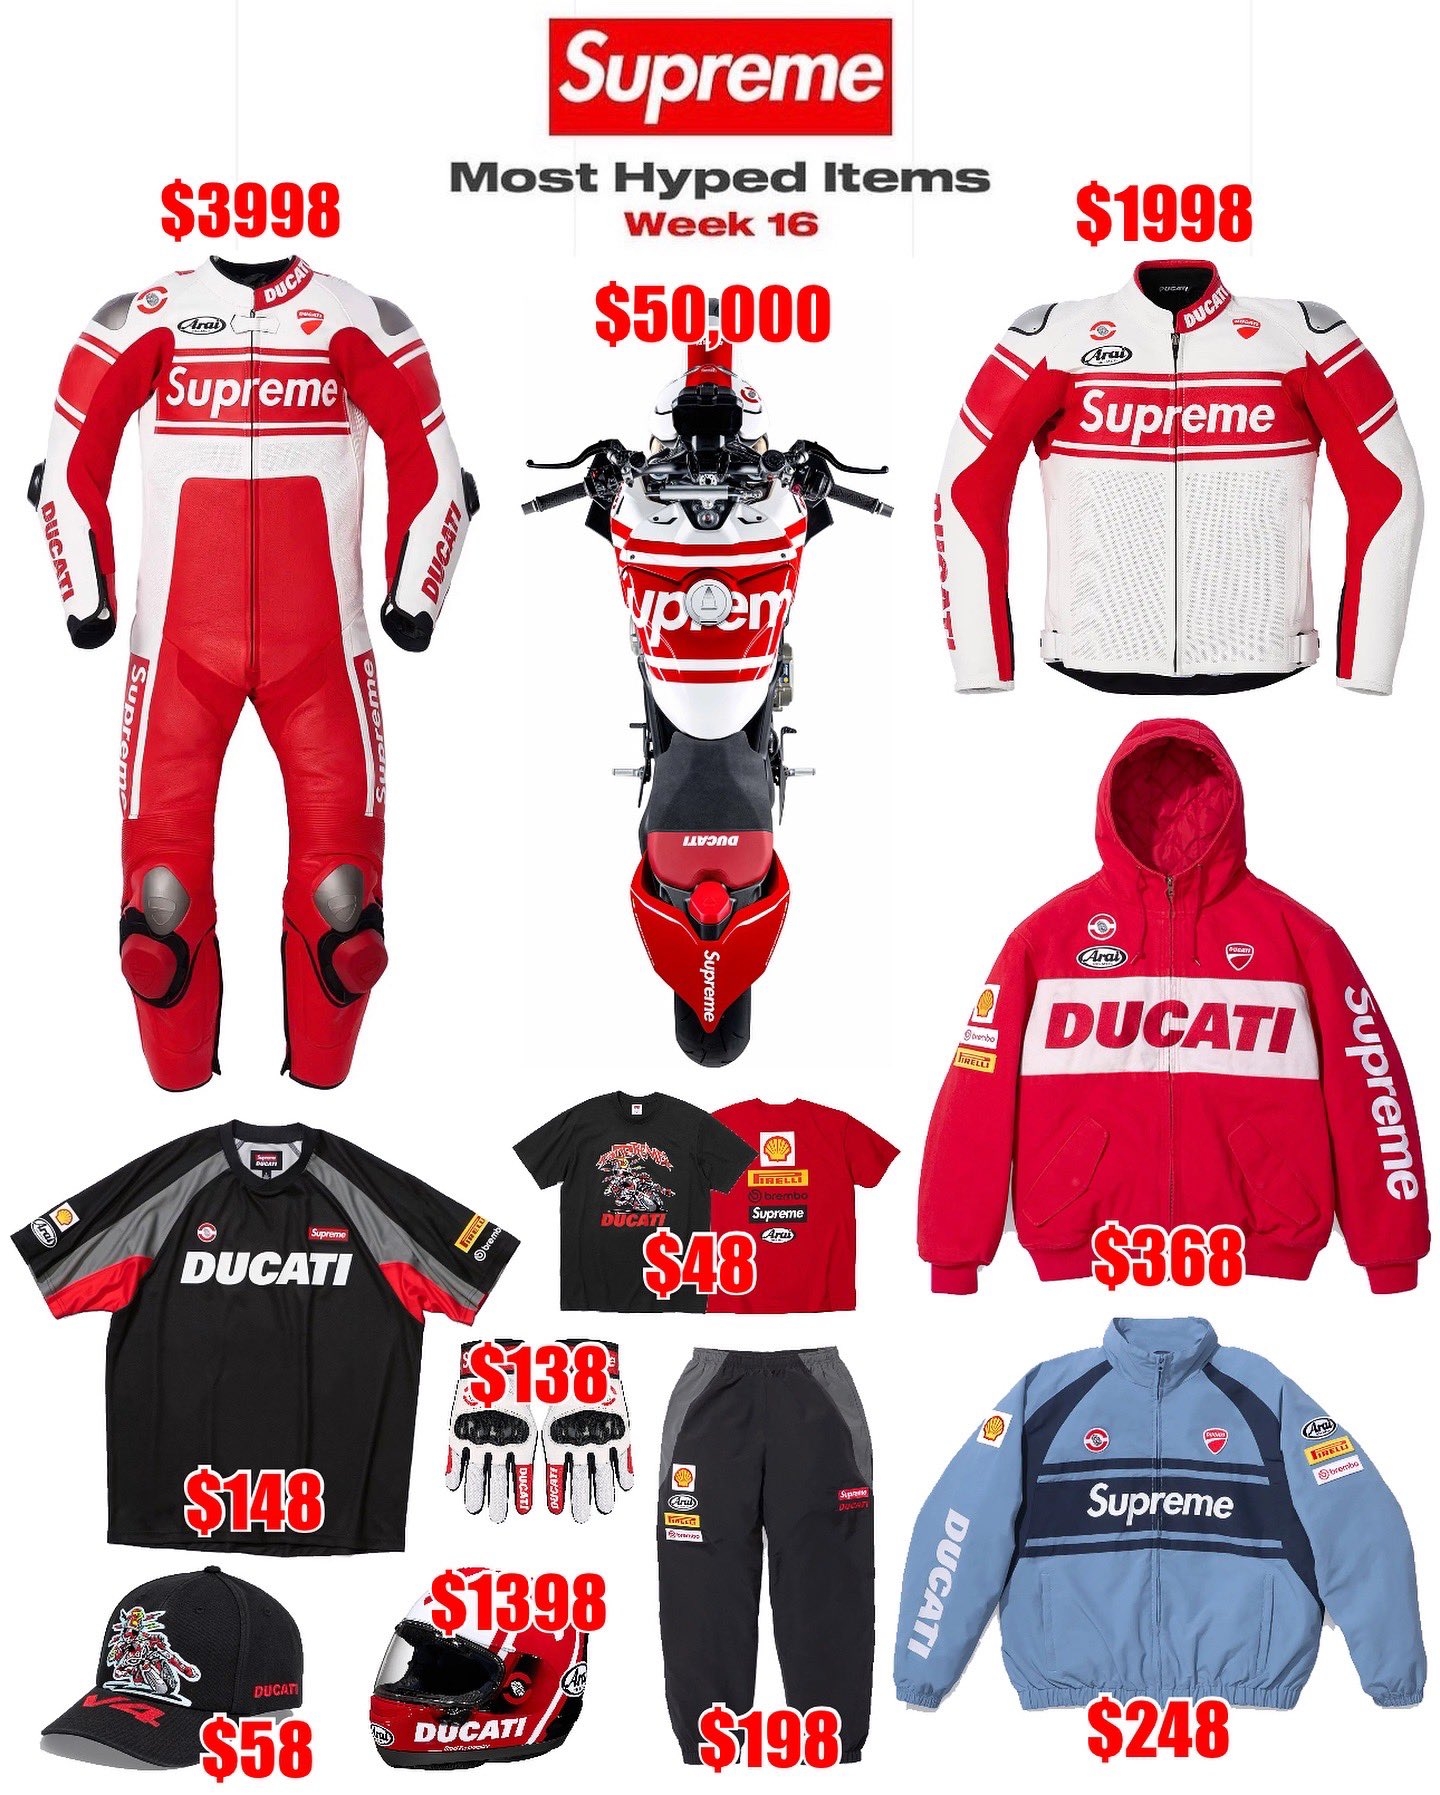 Supreme x Ducati collaboration drops online tomorrow!